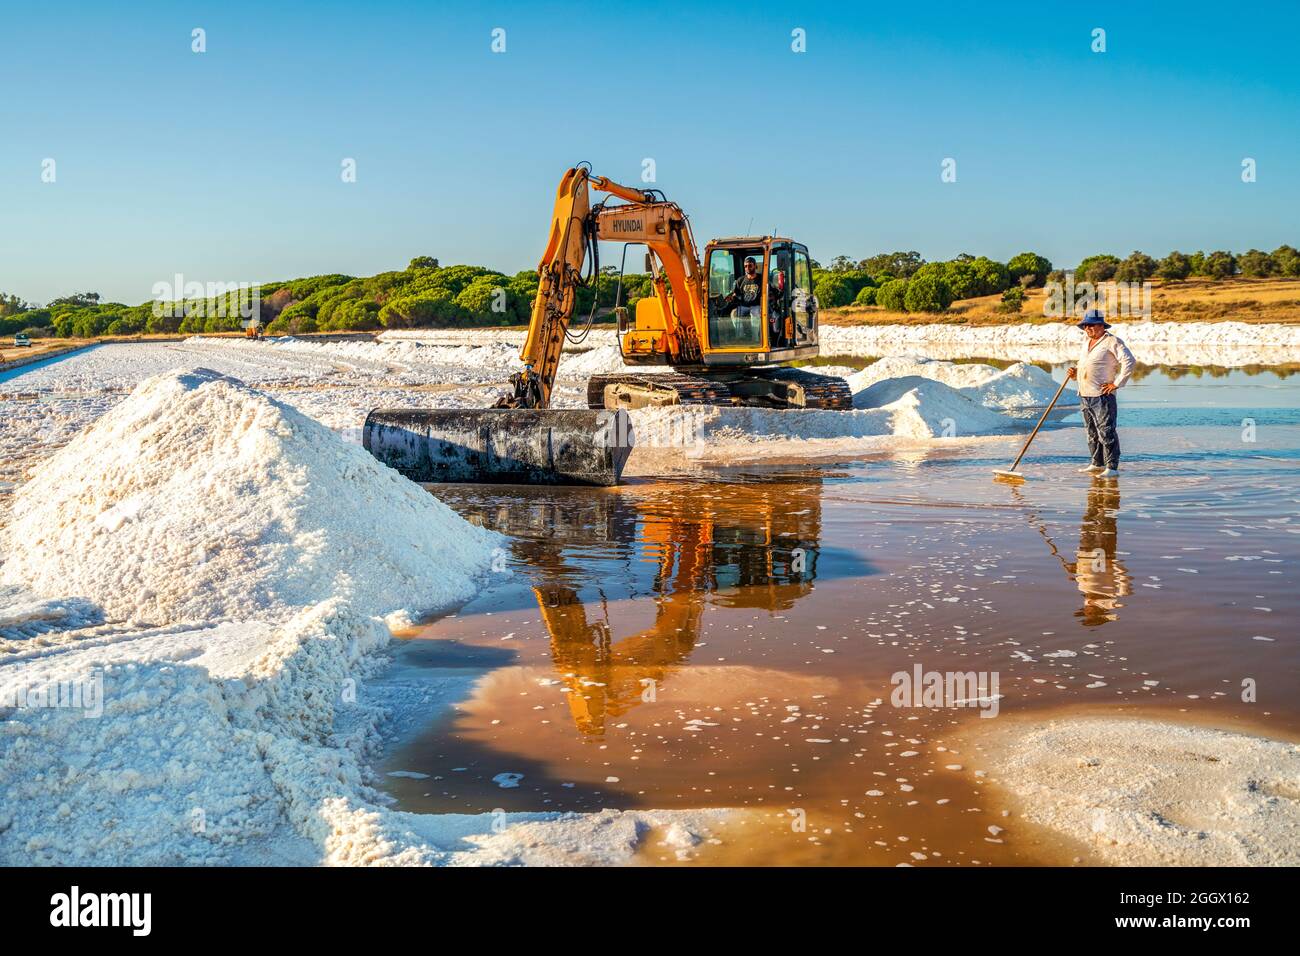 20 août 2021 - Faro, Portugal : récolte de sel de mer avec un creuseur jaune dans les salines naturelles Banque D'Images